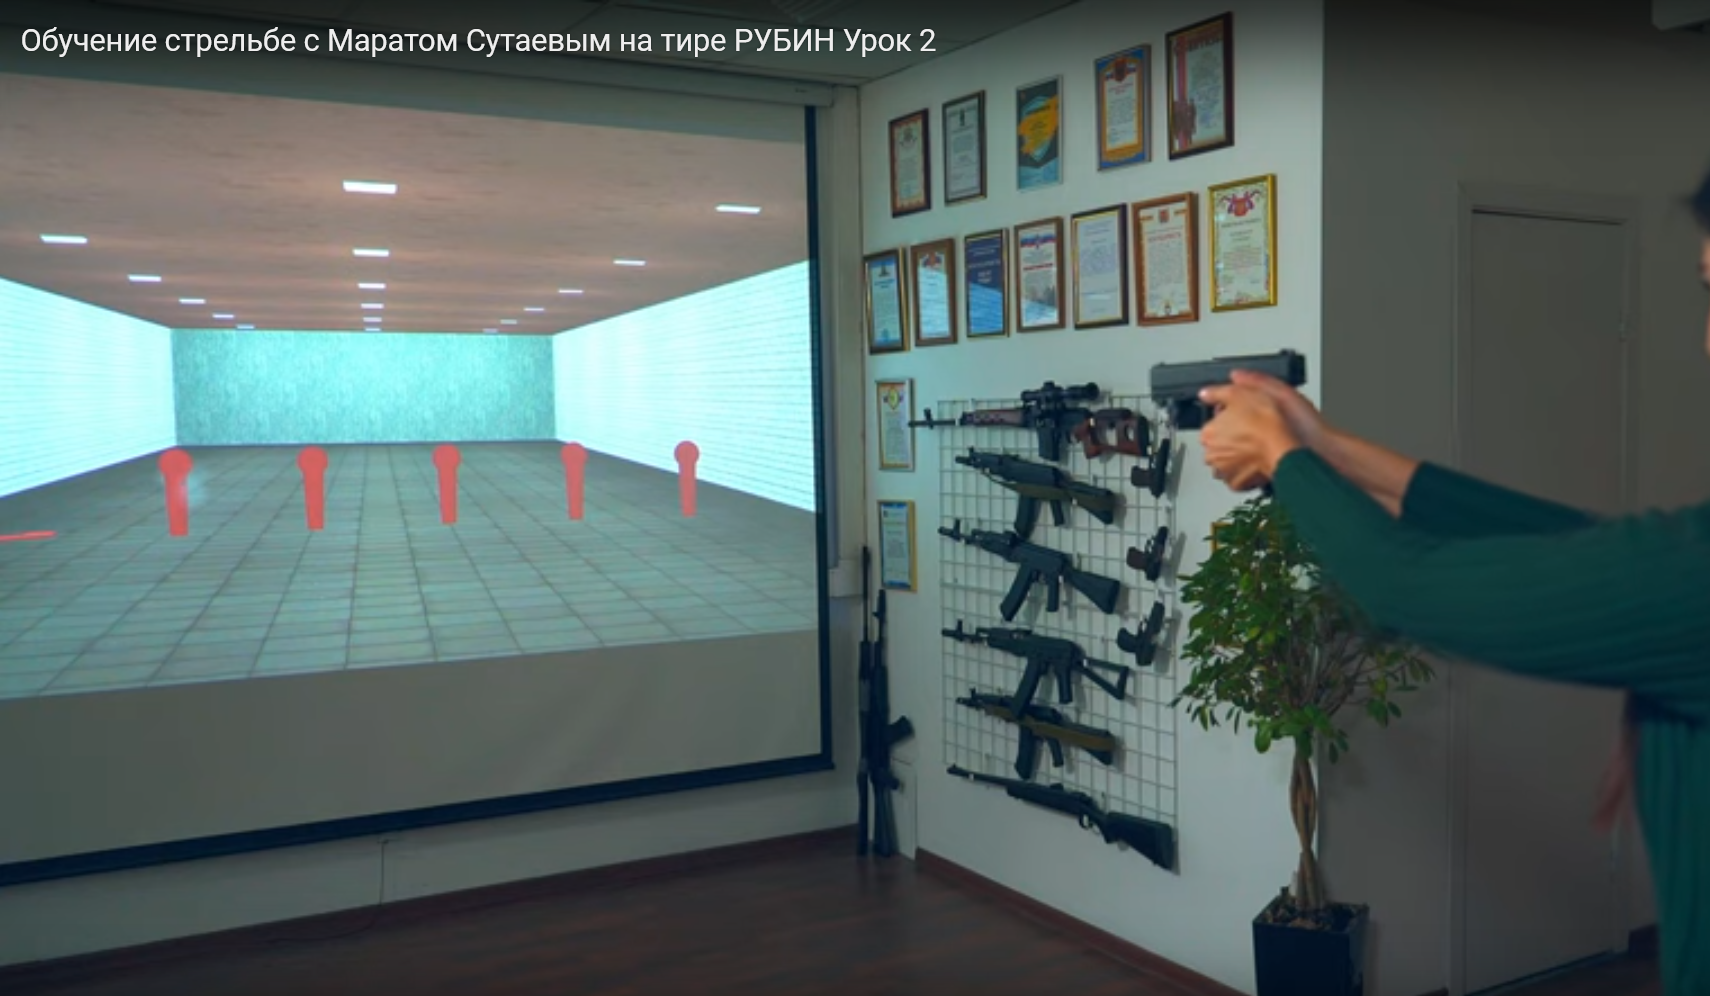 Обучение стрельбе с помощью тира РУБИН. Урок 2 (Видео)